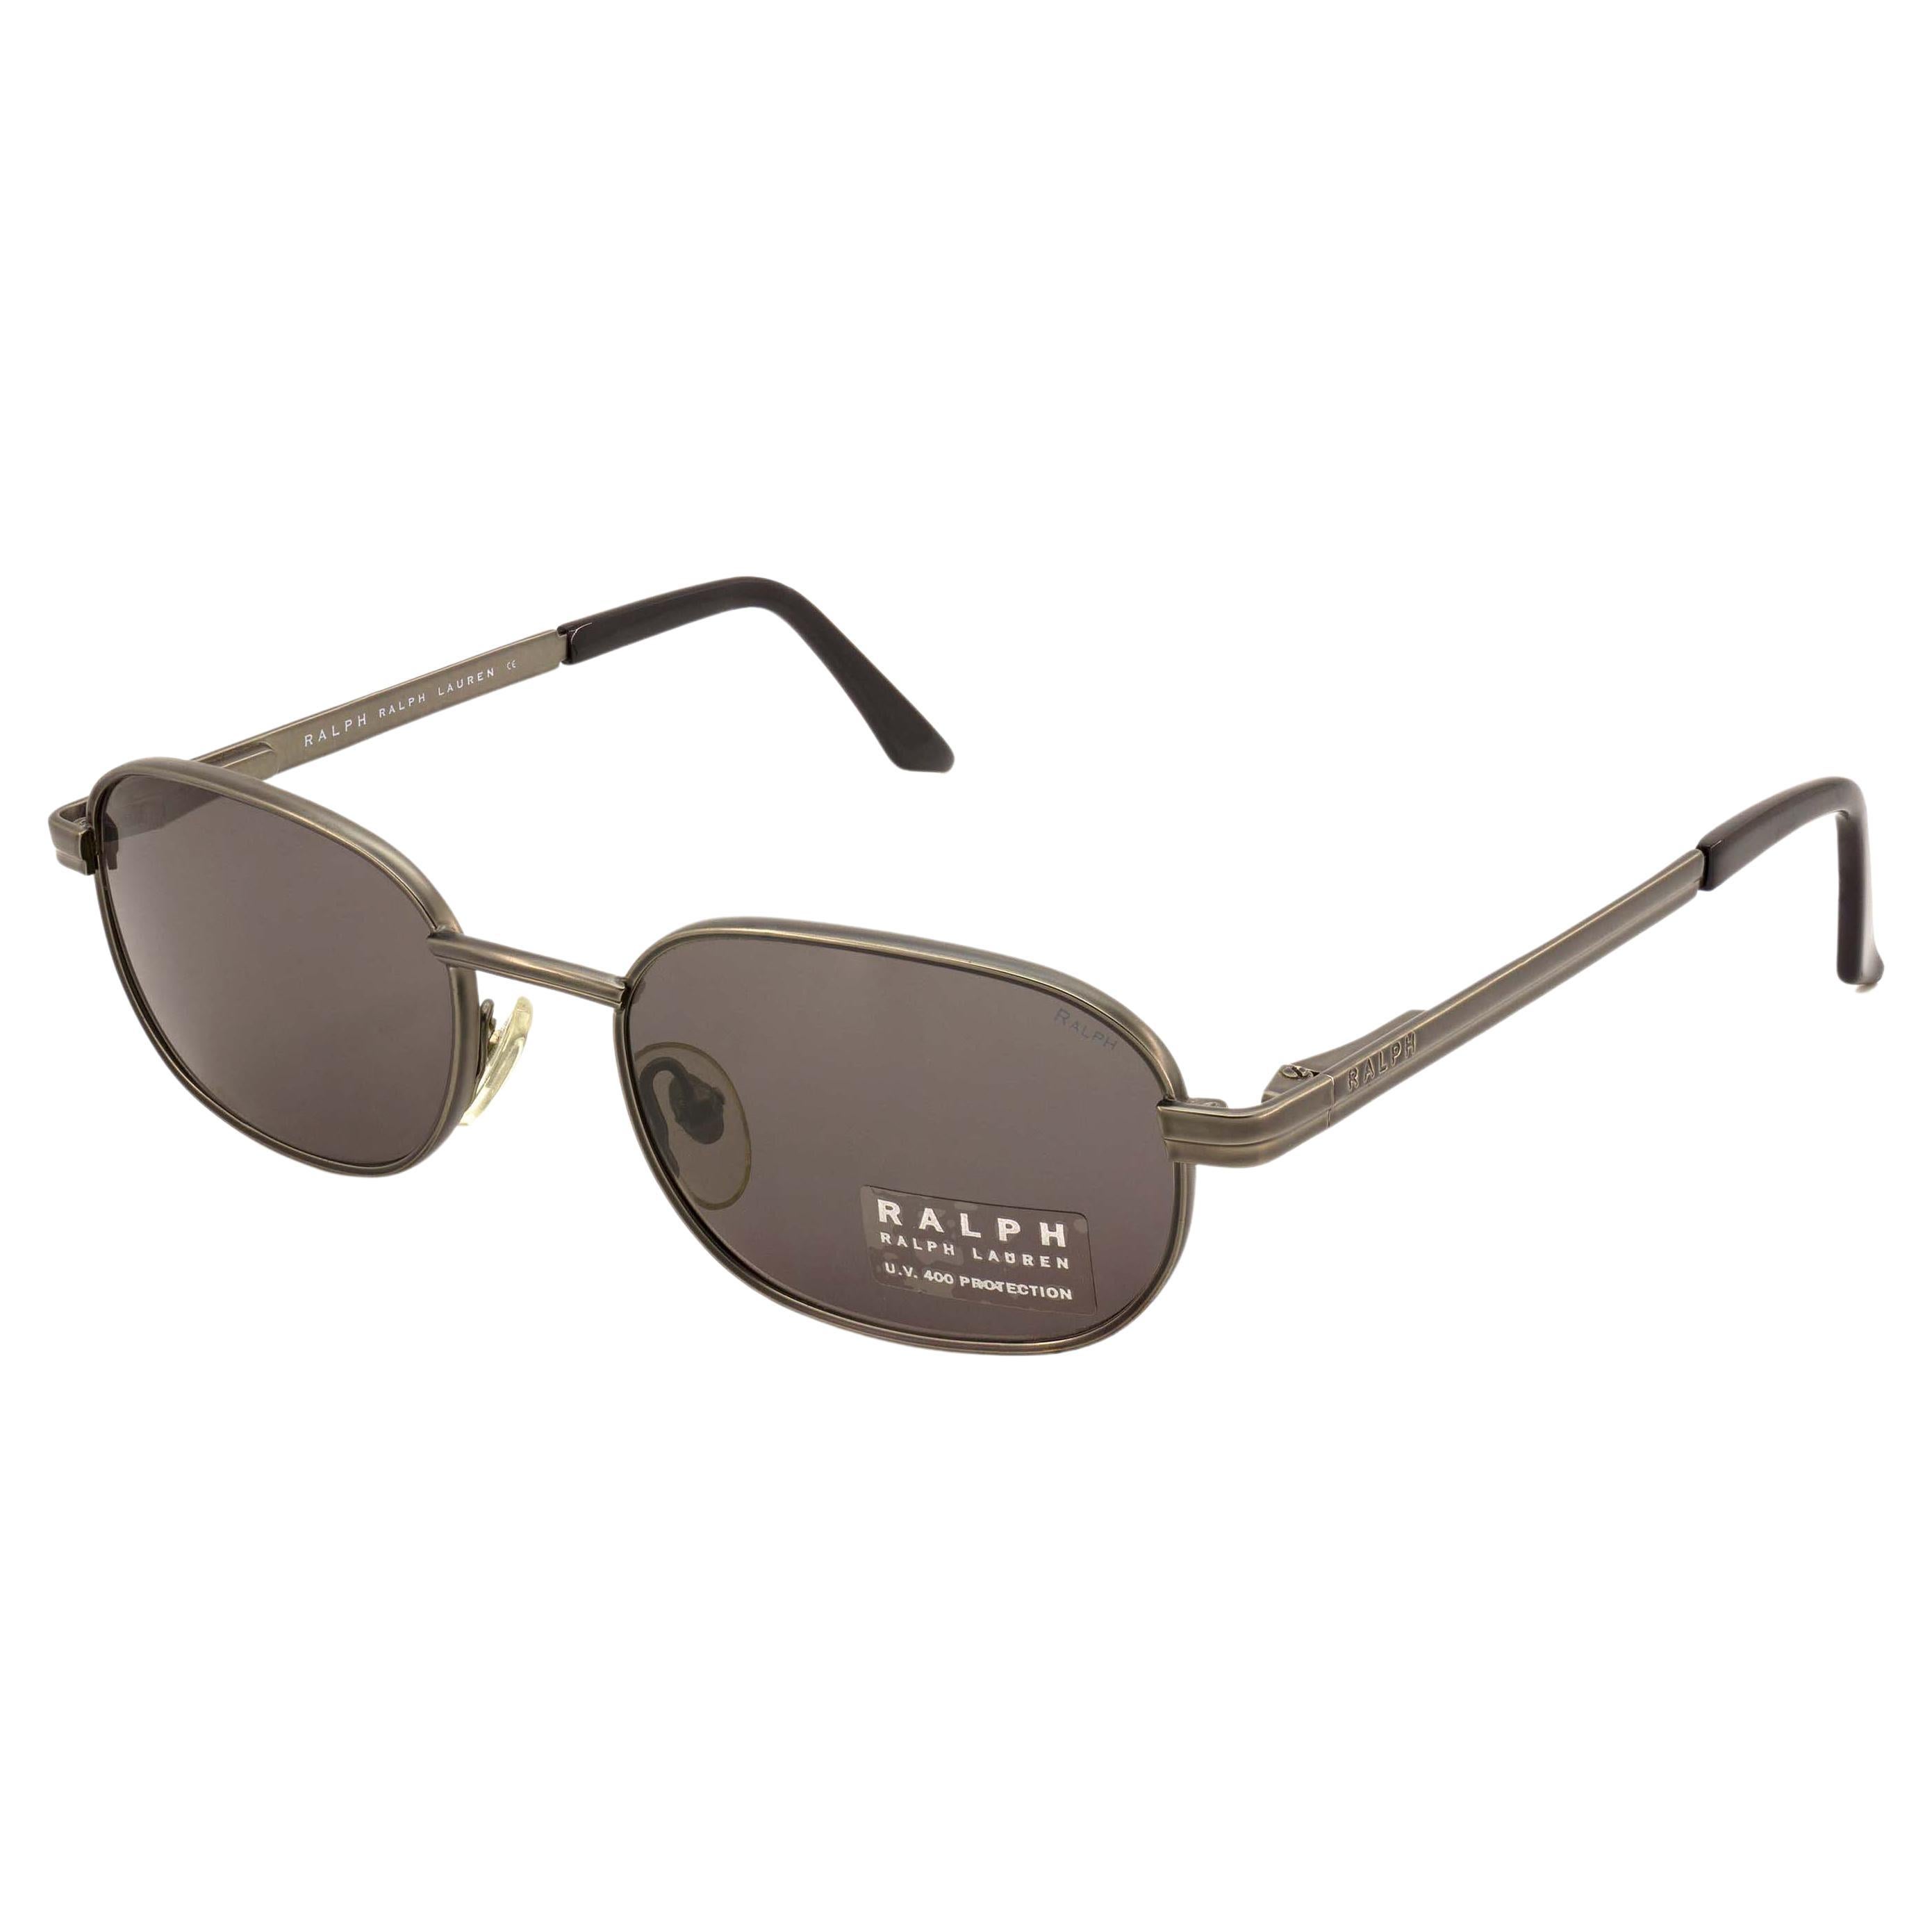 Ralph Lauren vintage sunglasses For Sale at 1stDibs ralph lauren vintage, vintage ralph lauren sunglasses